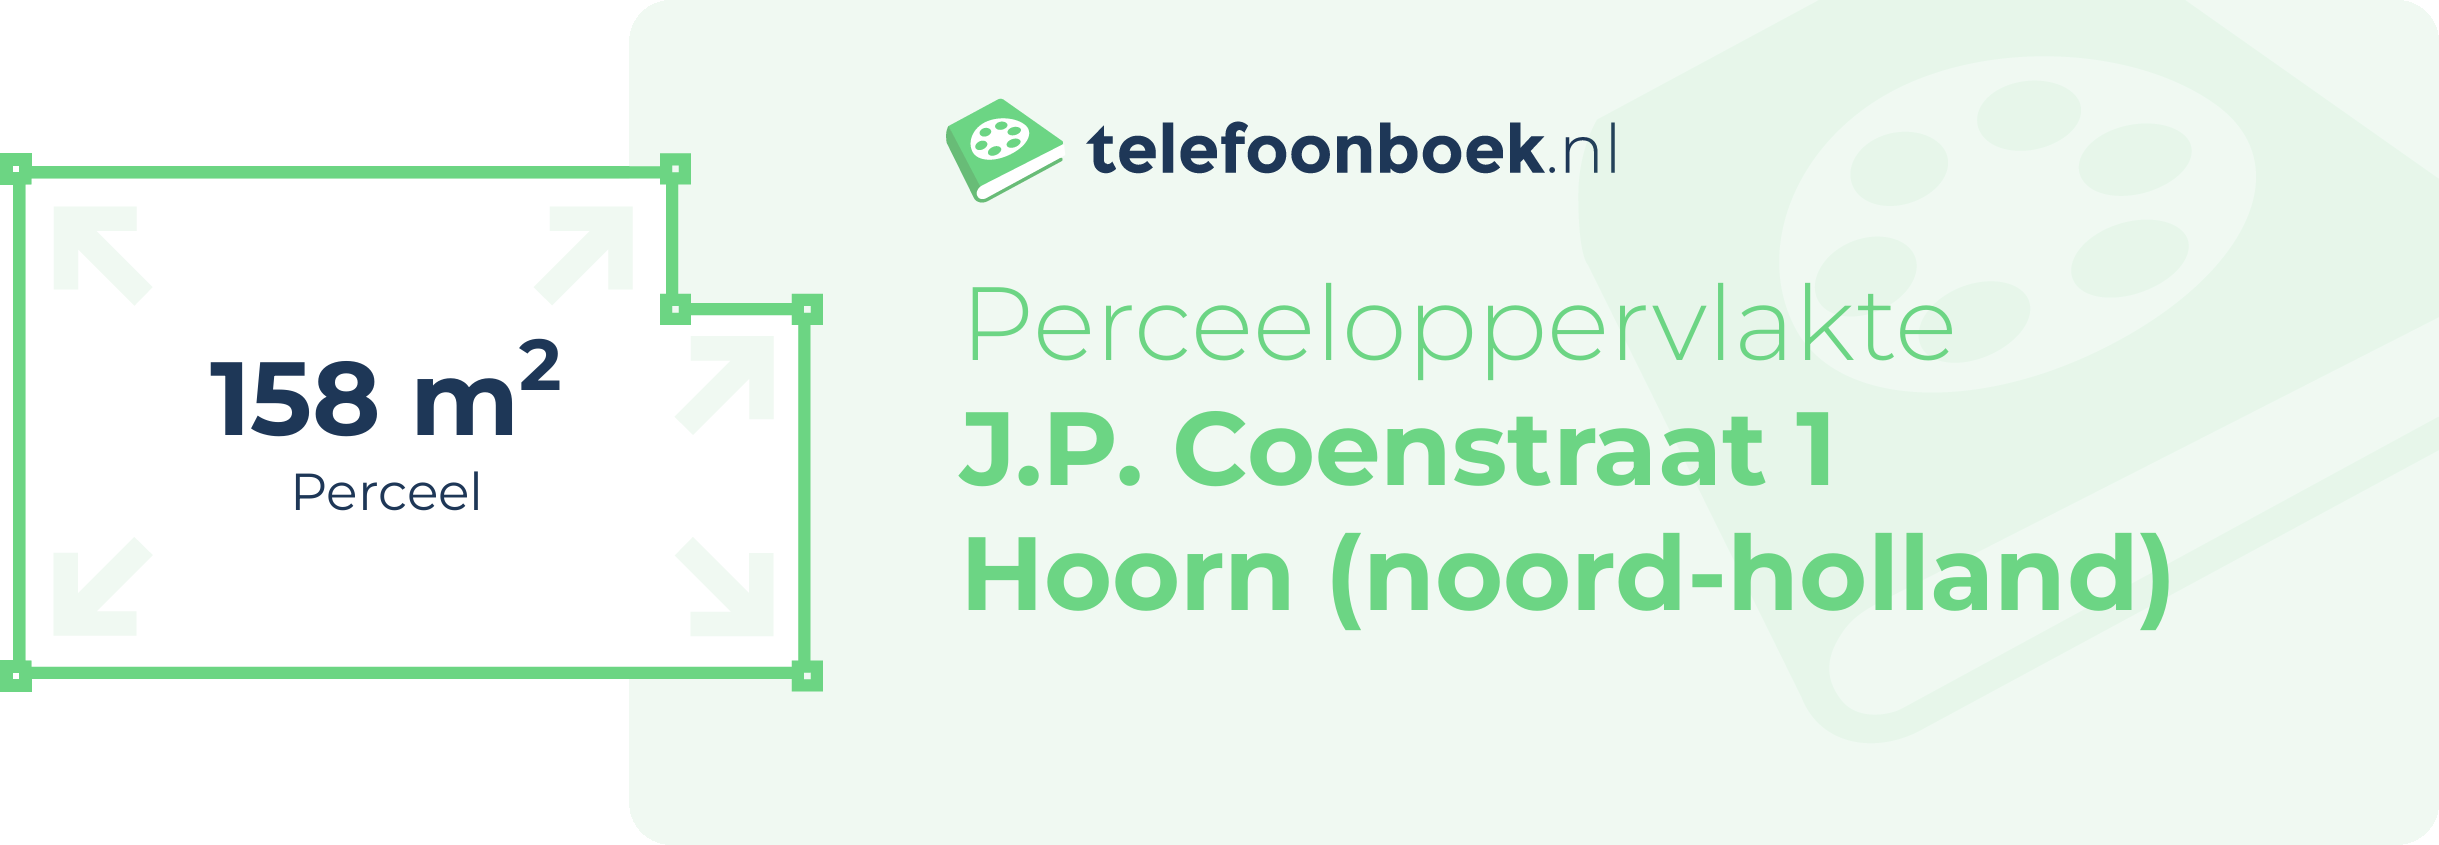 Perceeloppervlakte J.P. Coenstraat 1 Hoorn (Noord-Holland)